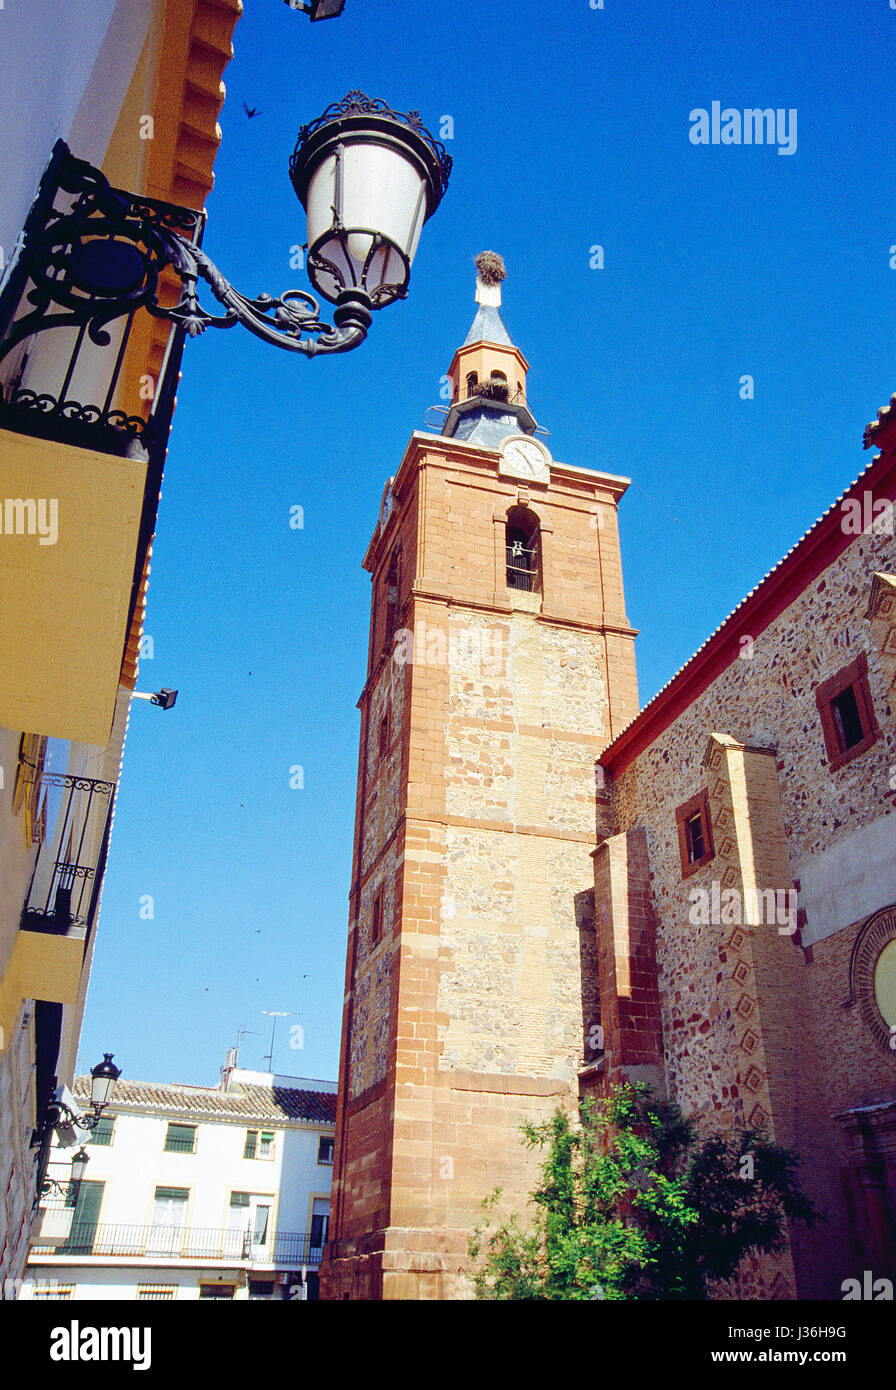 Clocher de l'église. Herencia, Ciudad Real province, Castilla La Mancha, Espagne. Banque D'Images